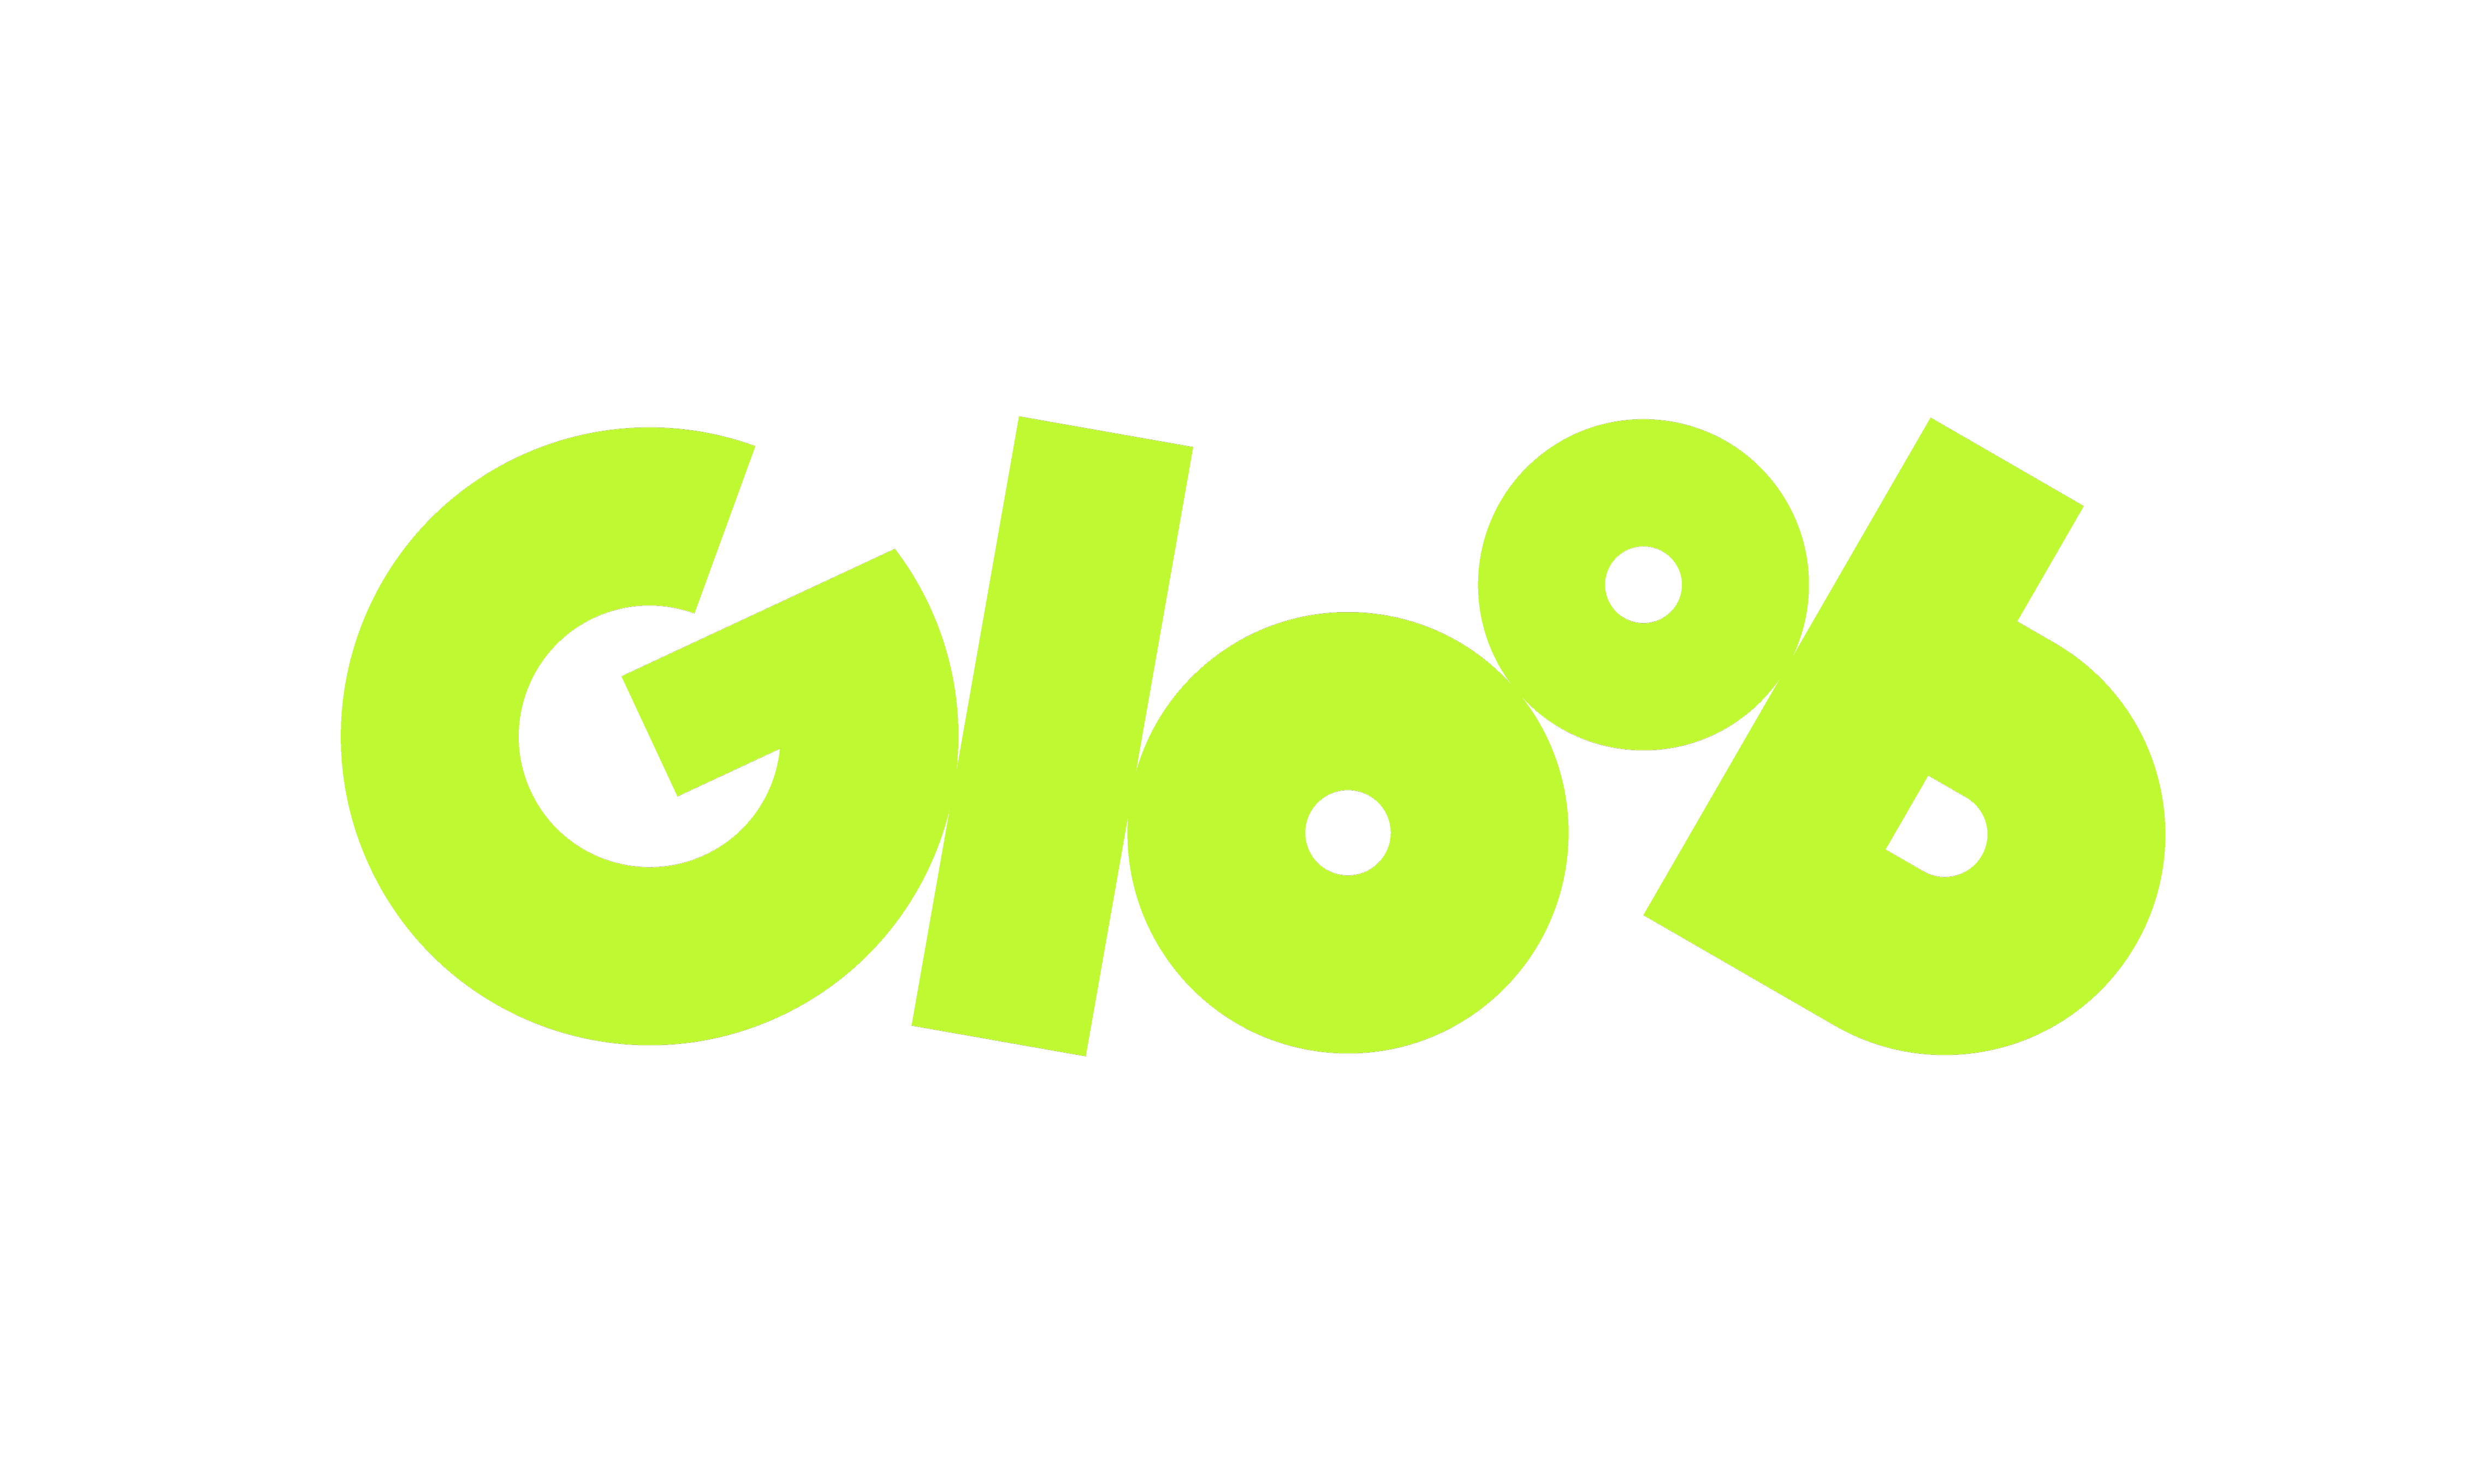 Gloob Logo - Gloob logo png 4 PNG Image